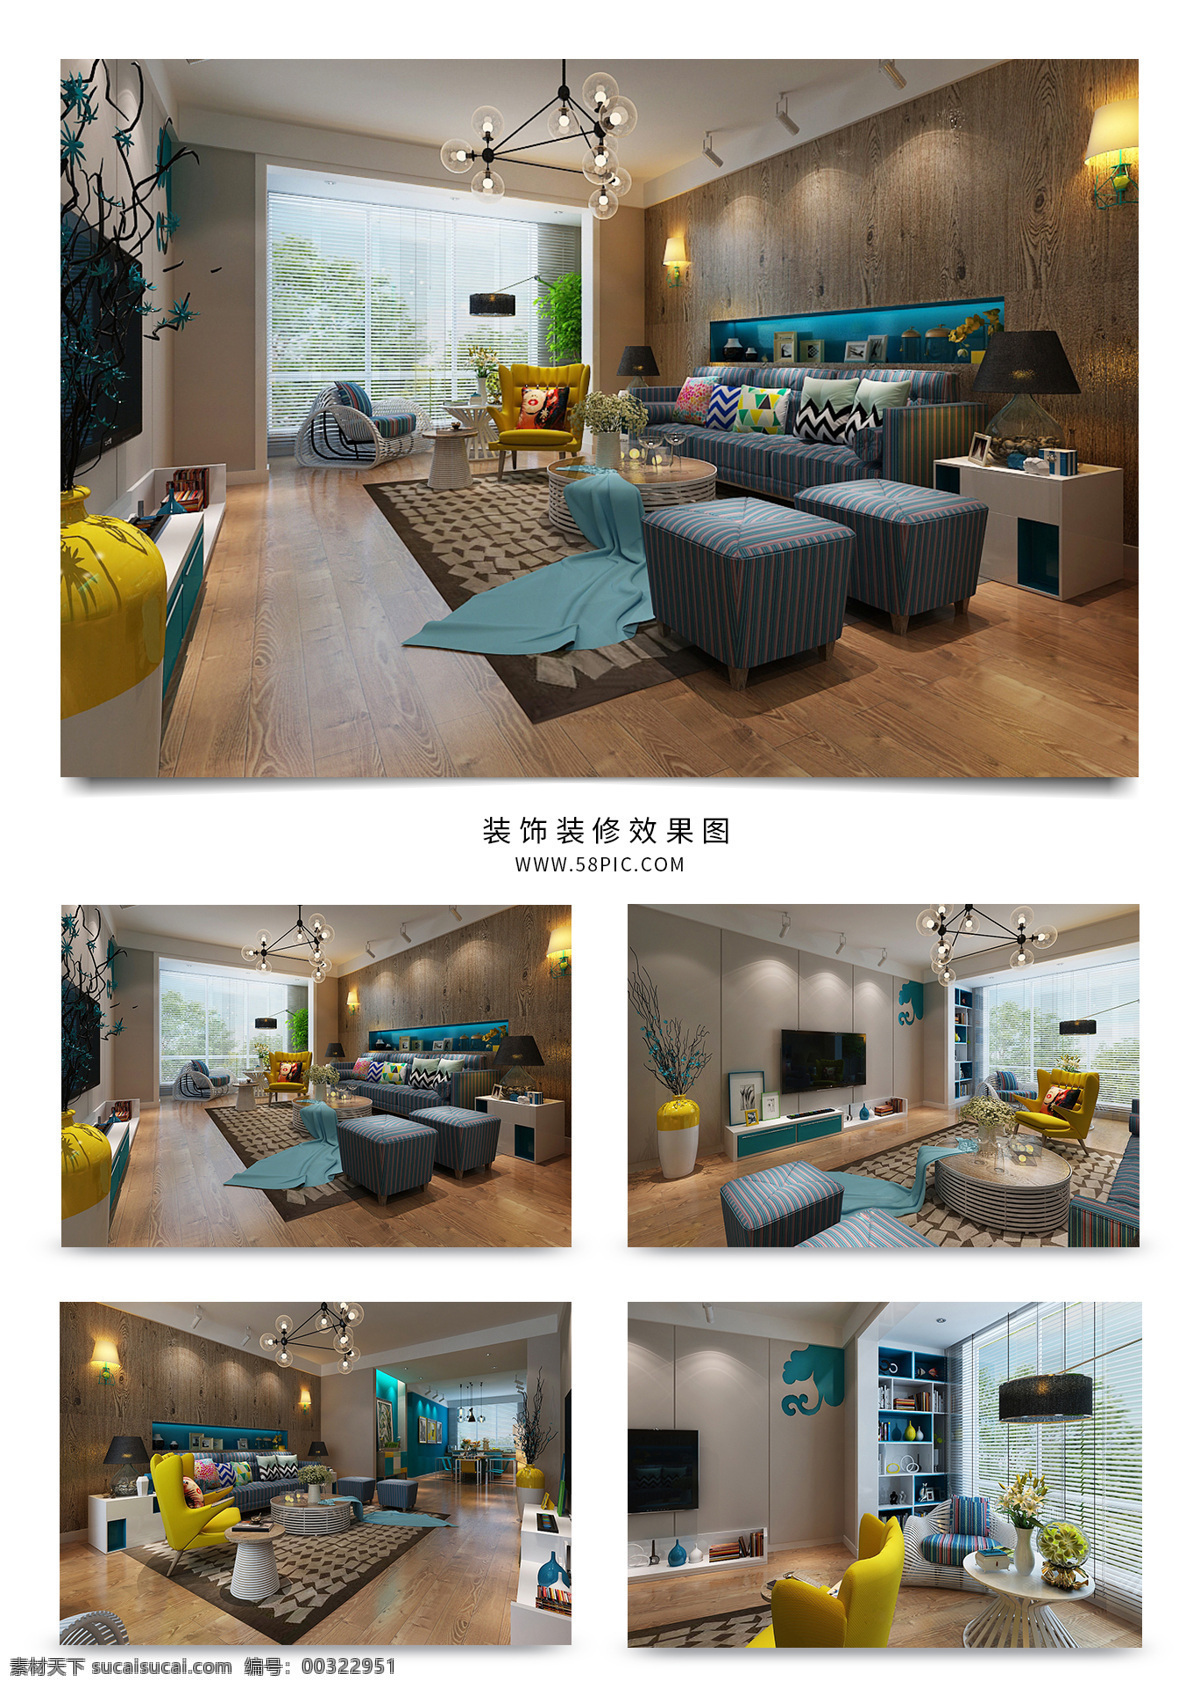 现代 简约 风格 家装 客厅 效果图 沙发 背景墙 室内设计 简洁 座椅 室内装饰